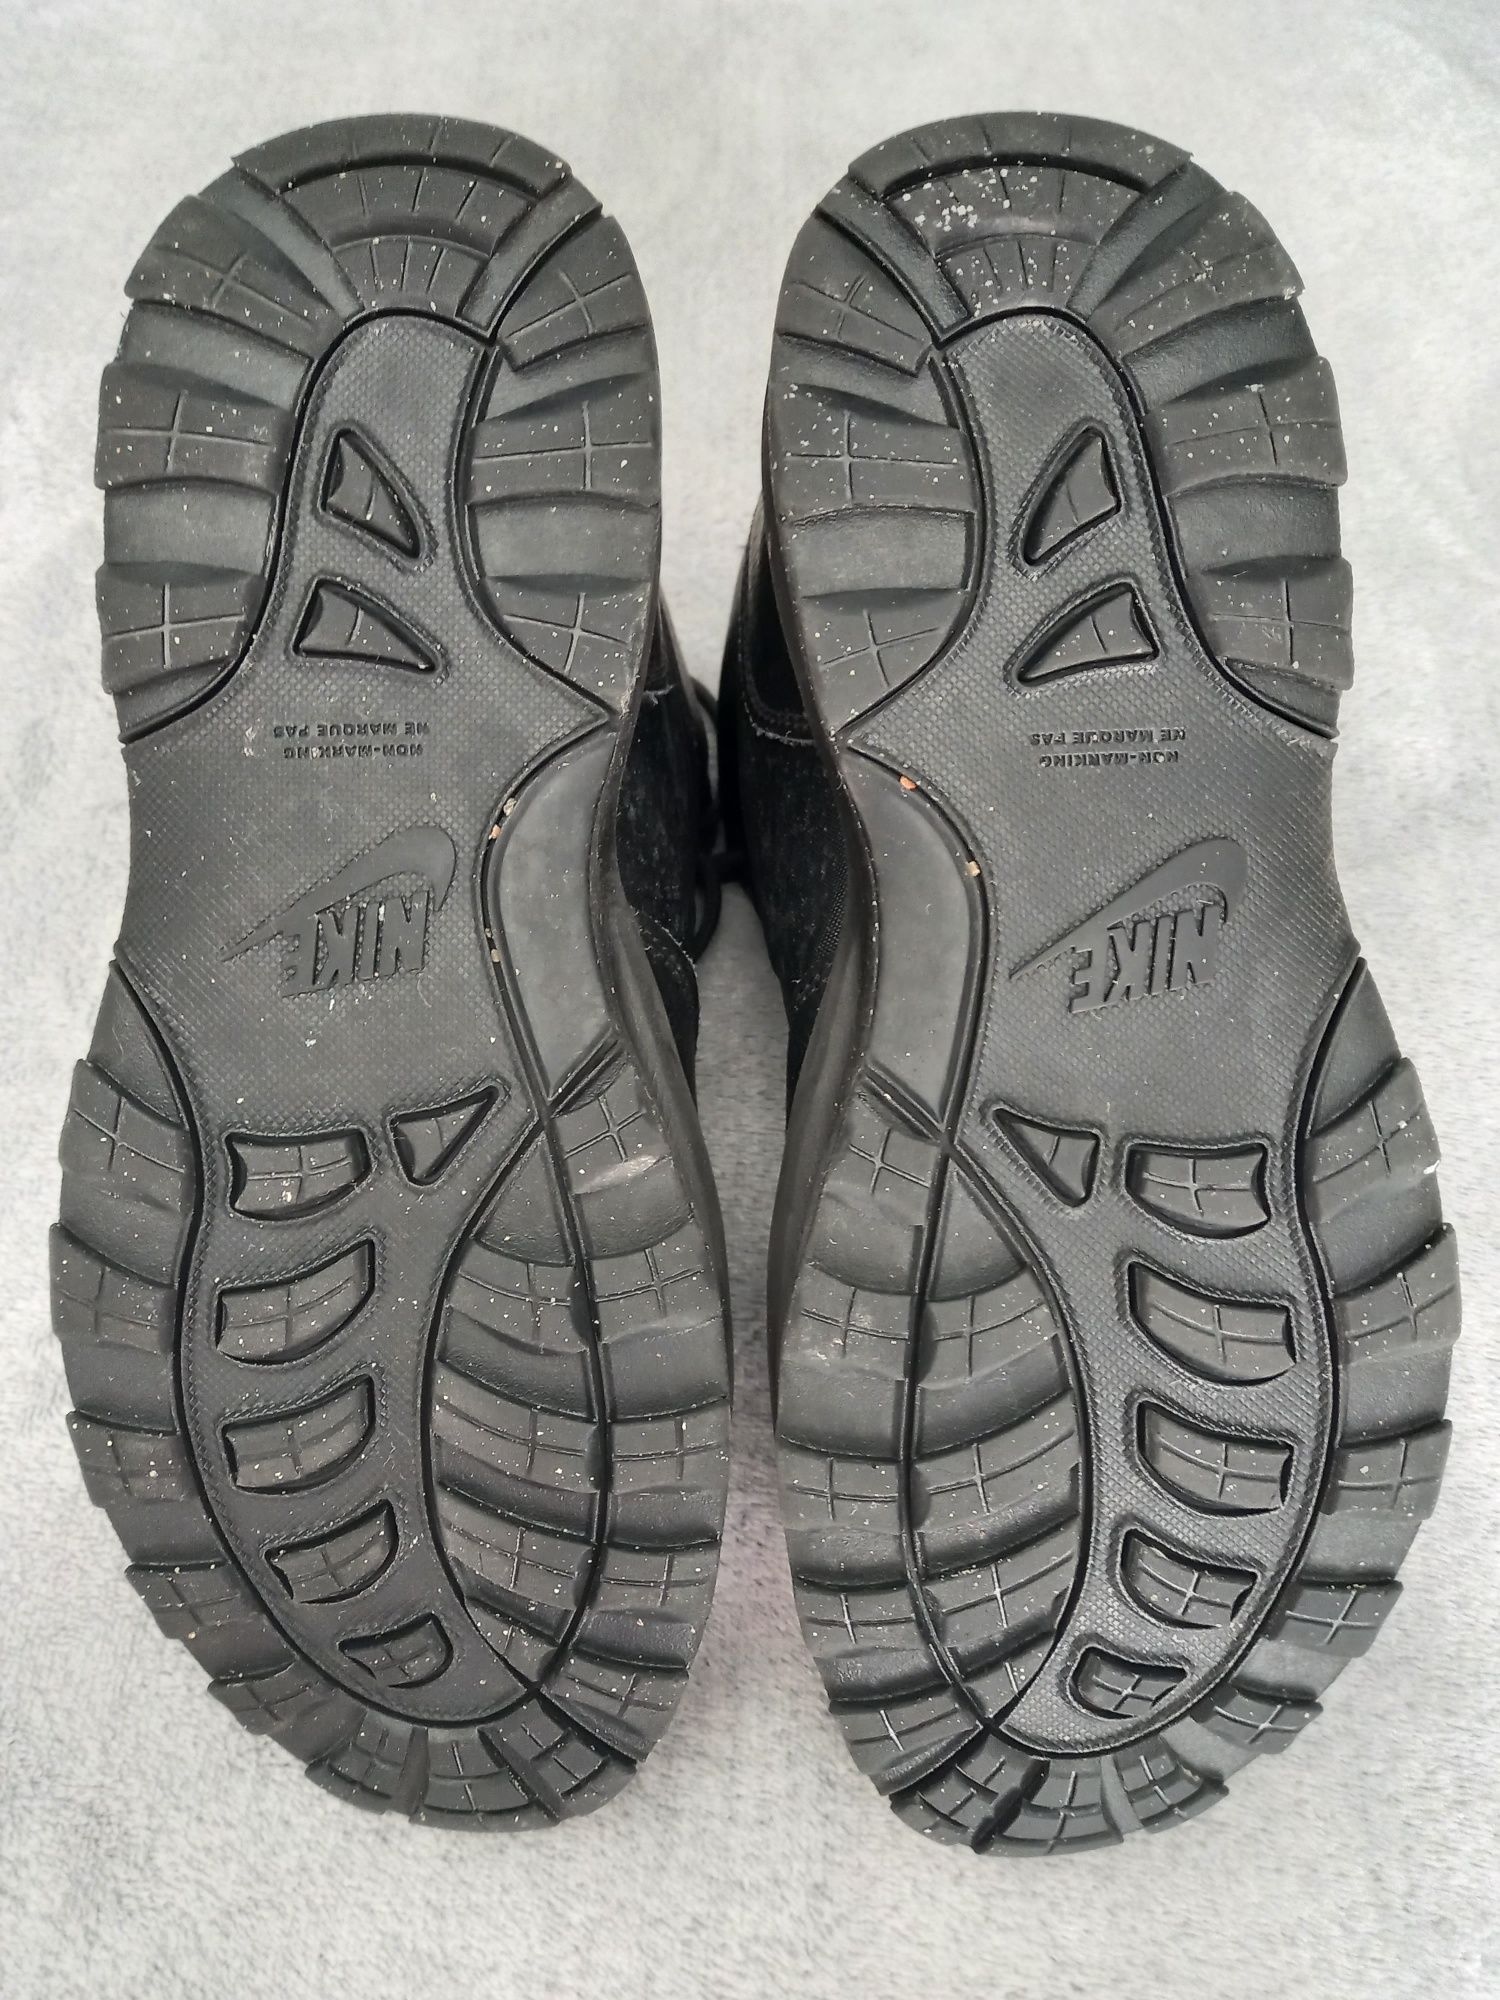 Продам зимові термо черевики Nike для чоловіка або підлітка, розмір 39